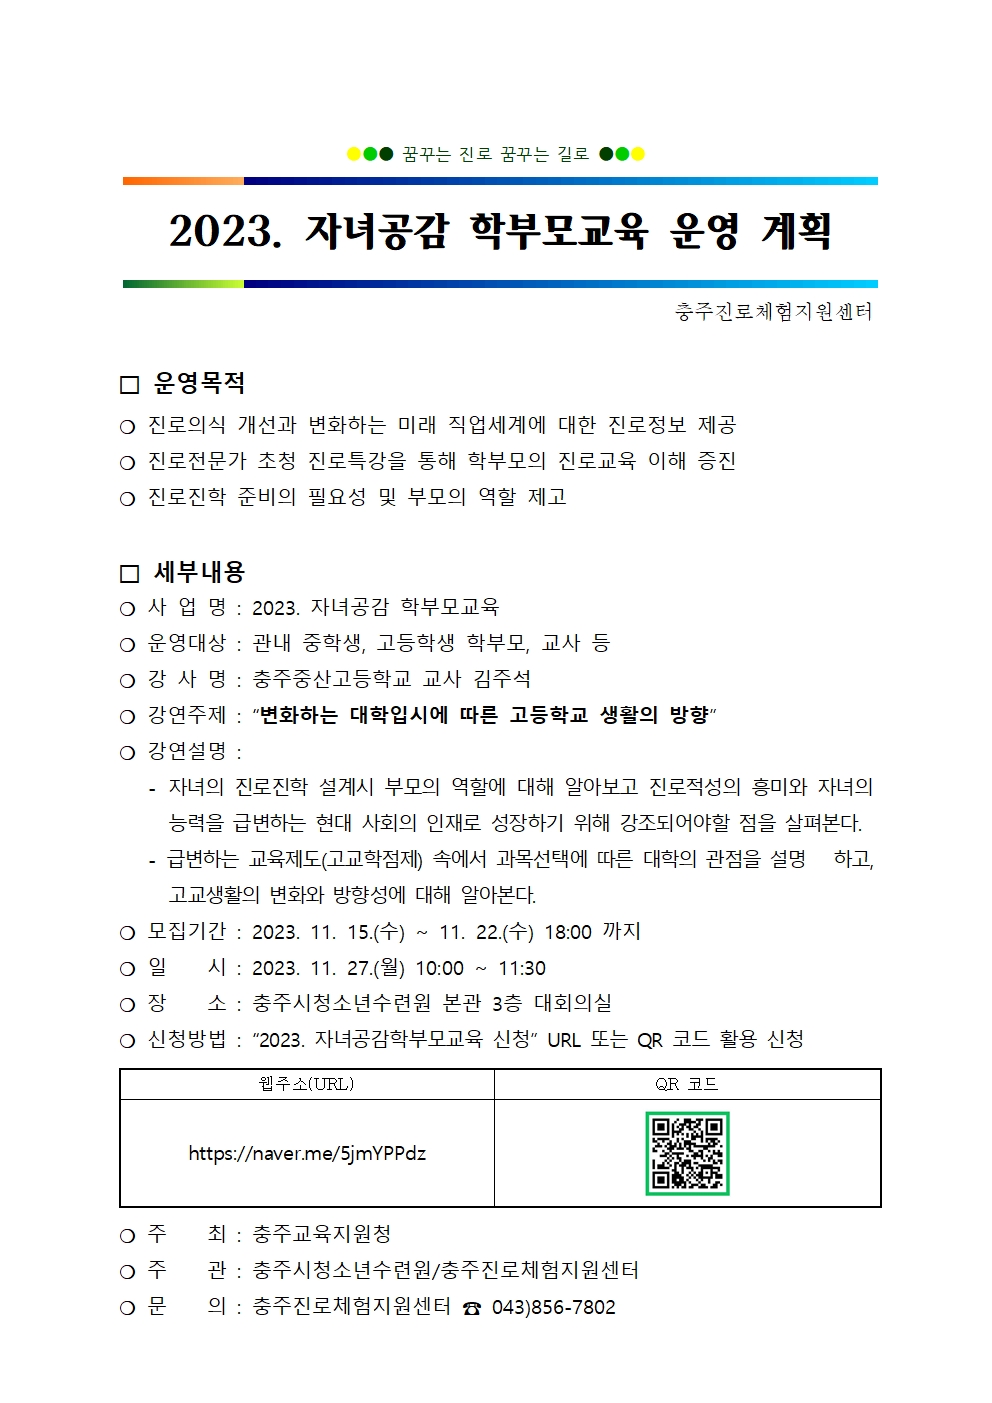 [붙임] 2023. 자녀공감 학부모교육 운영 계획001